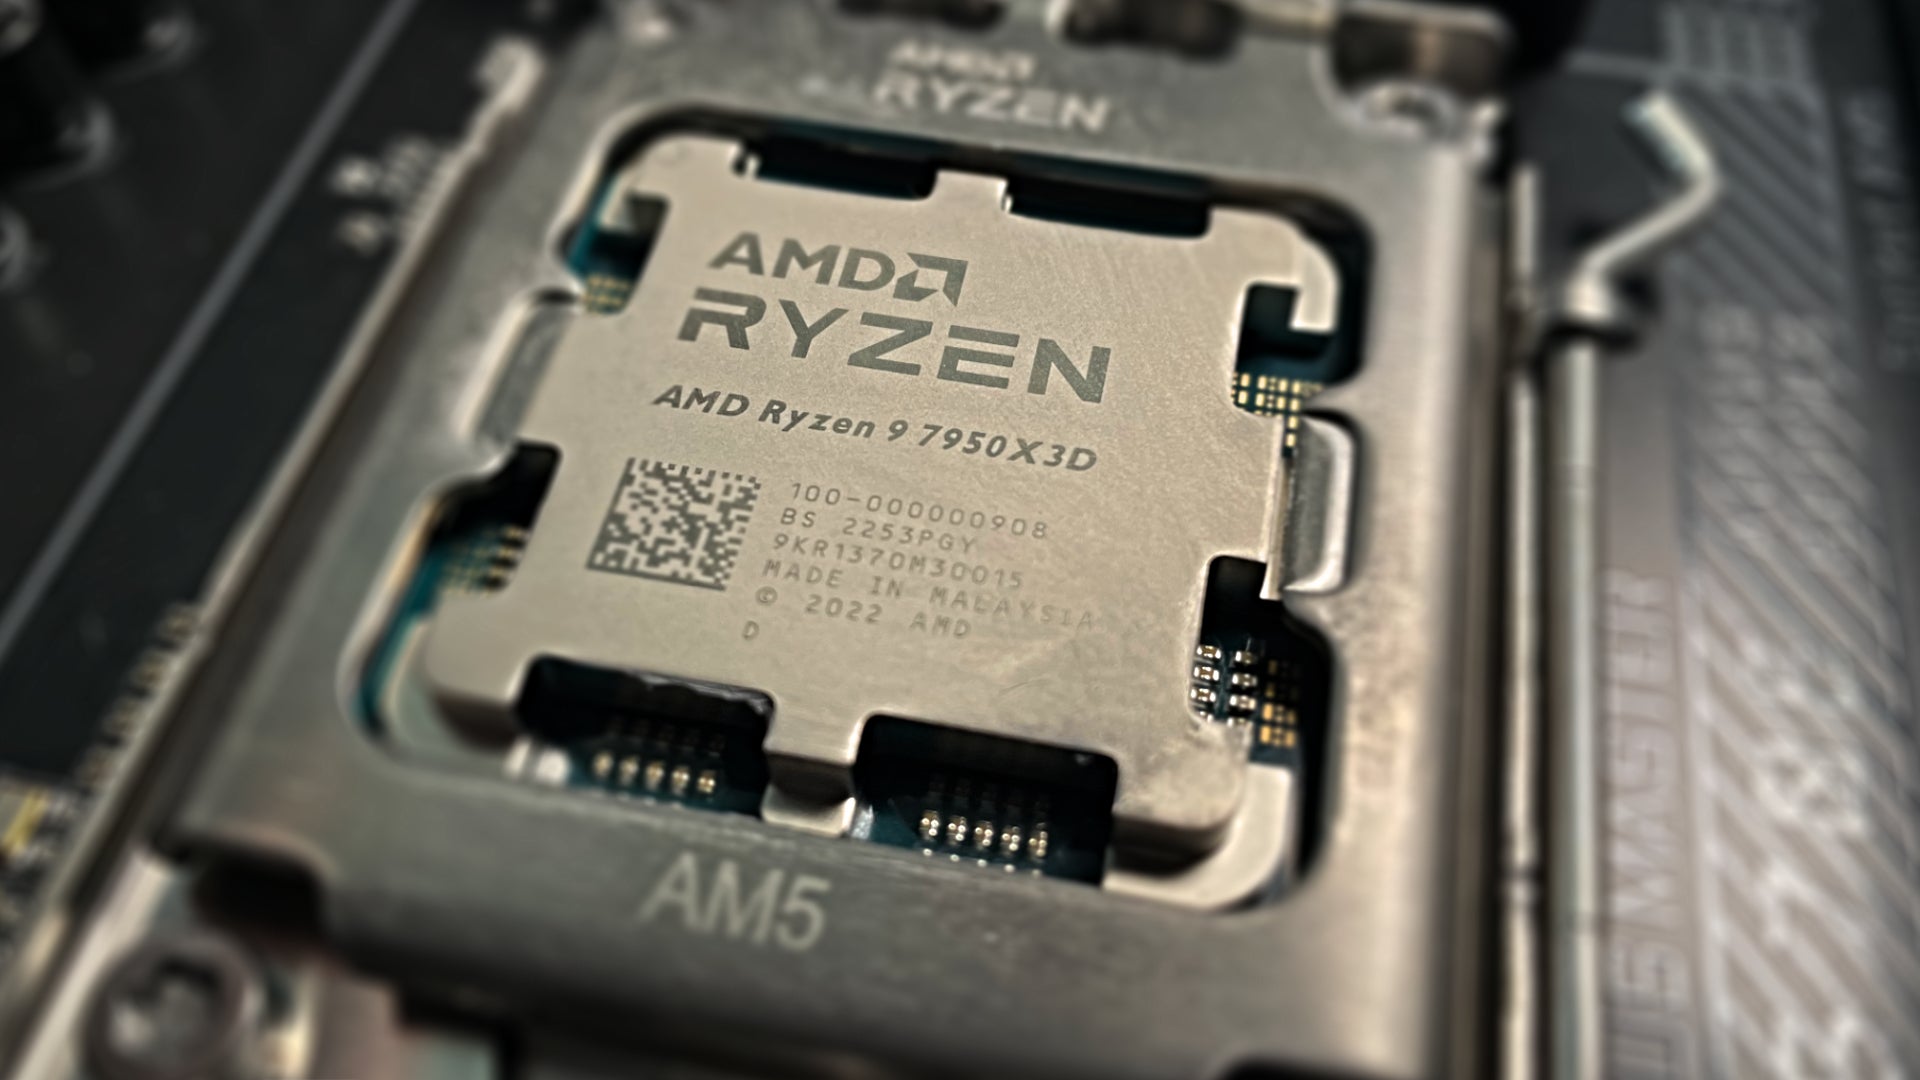 AMD Ryzen 7950X3D CPU